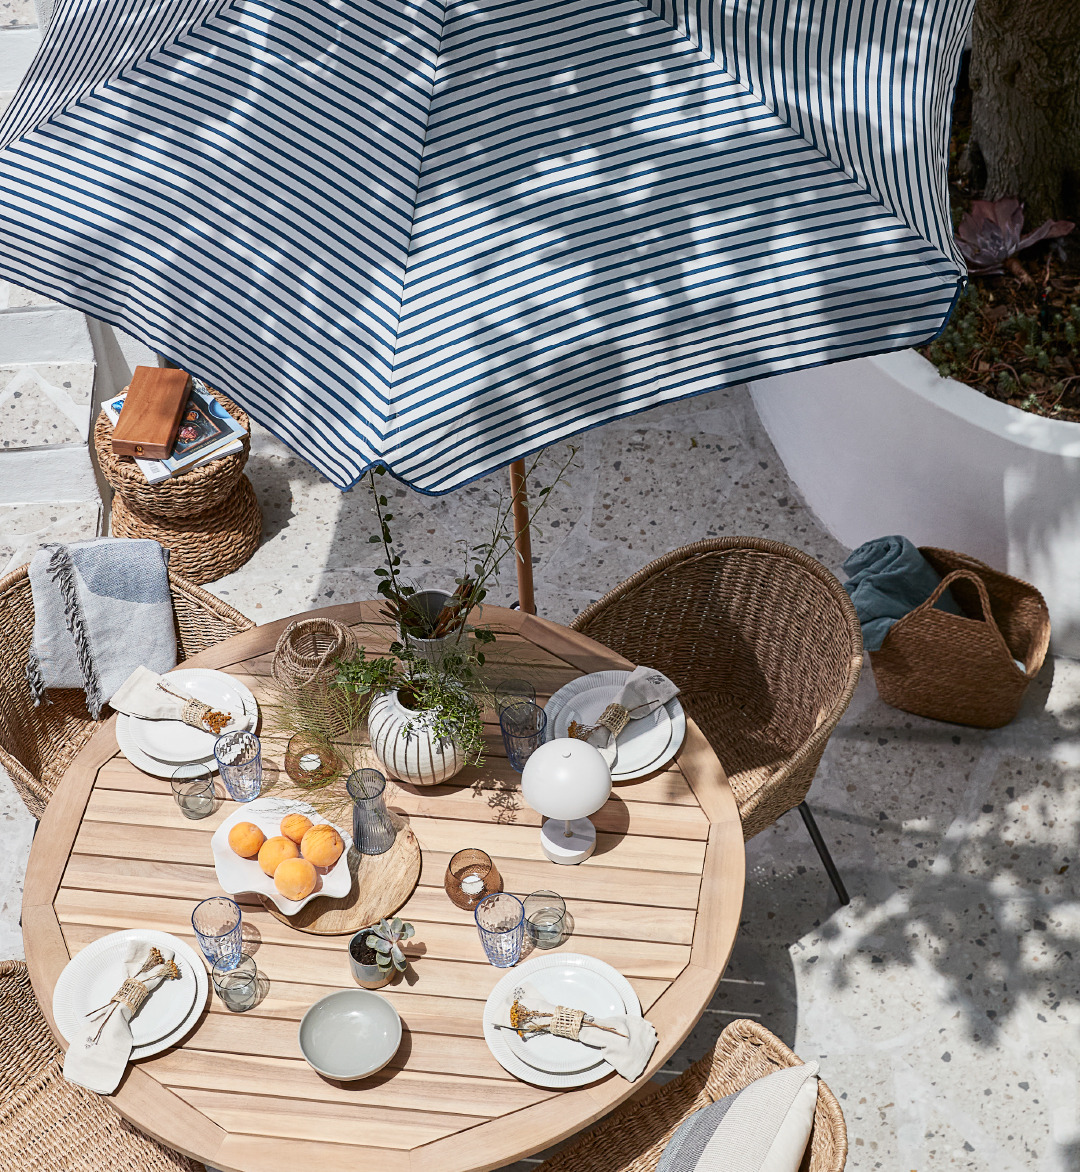 Zahradní stůl, židle, slunečník a doplňky